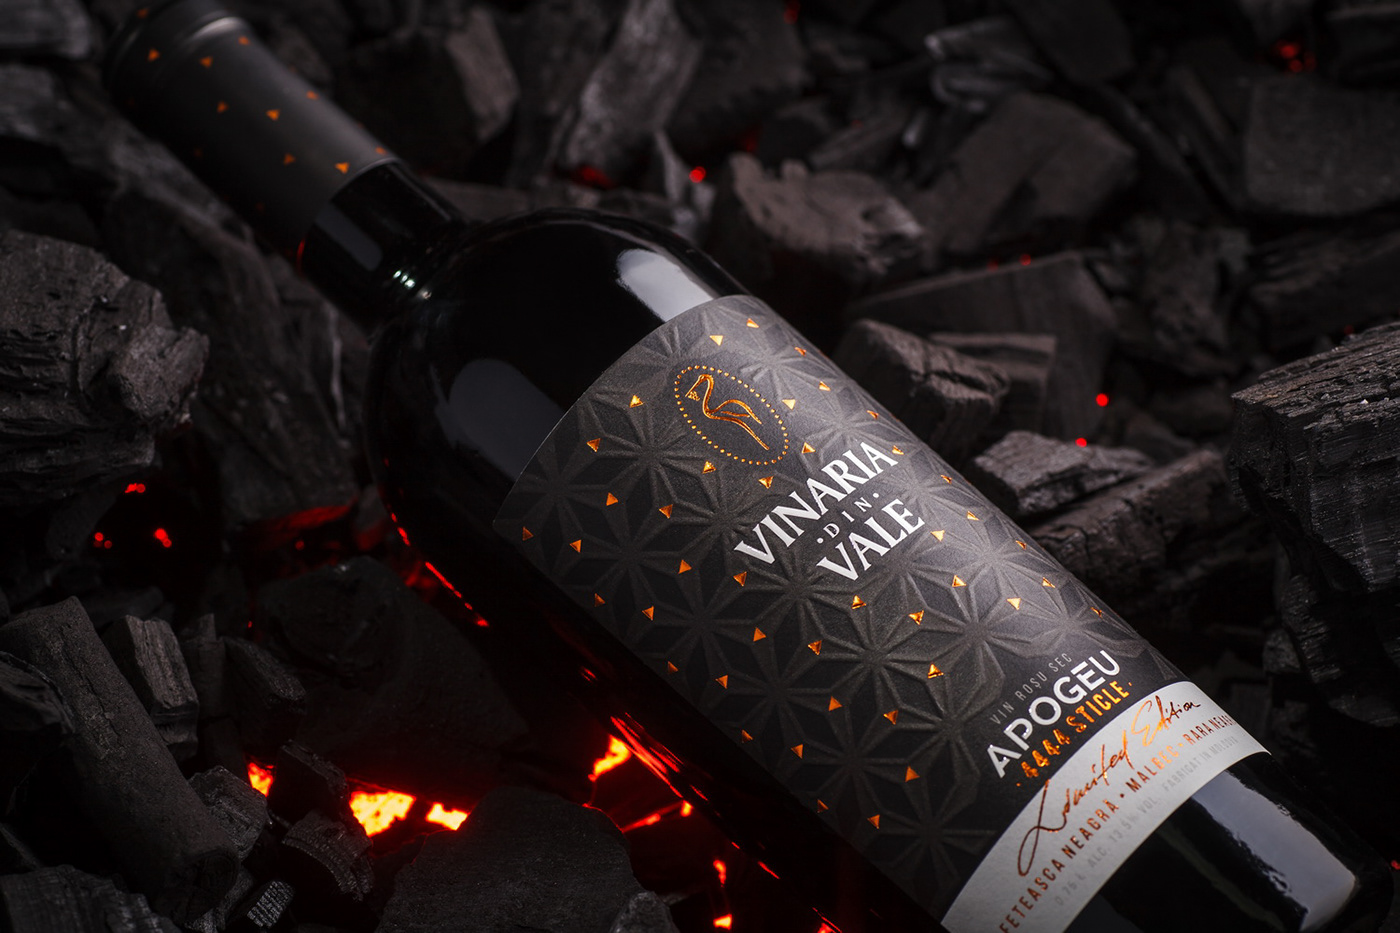 43oz vinaria din vale Apogeu wine label Moldova premium wine label design Packaging packaging design design studio